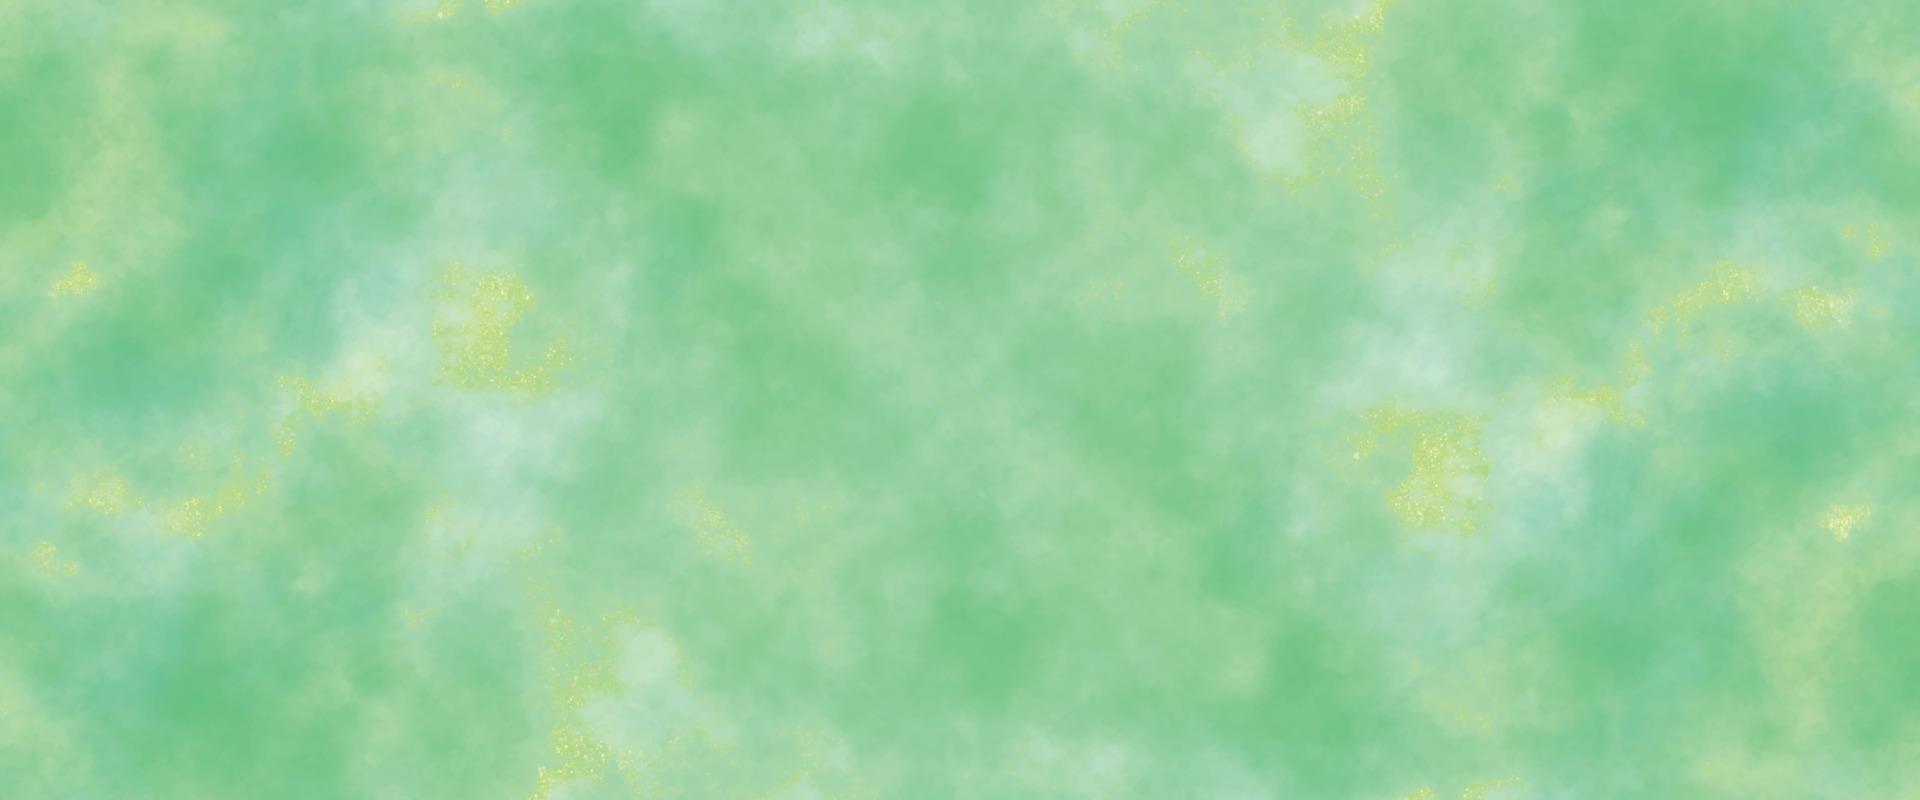 astratto acquerello dipingere sfondo. bellissimo blu verde e giallo acquerello spruzzo design. colorato pianura verde toni acquerello struttura. carta struttura aquarelle tela per moderno creativo design vettore